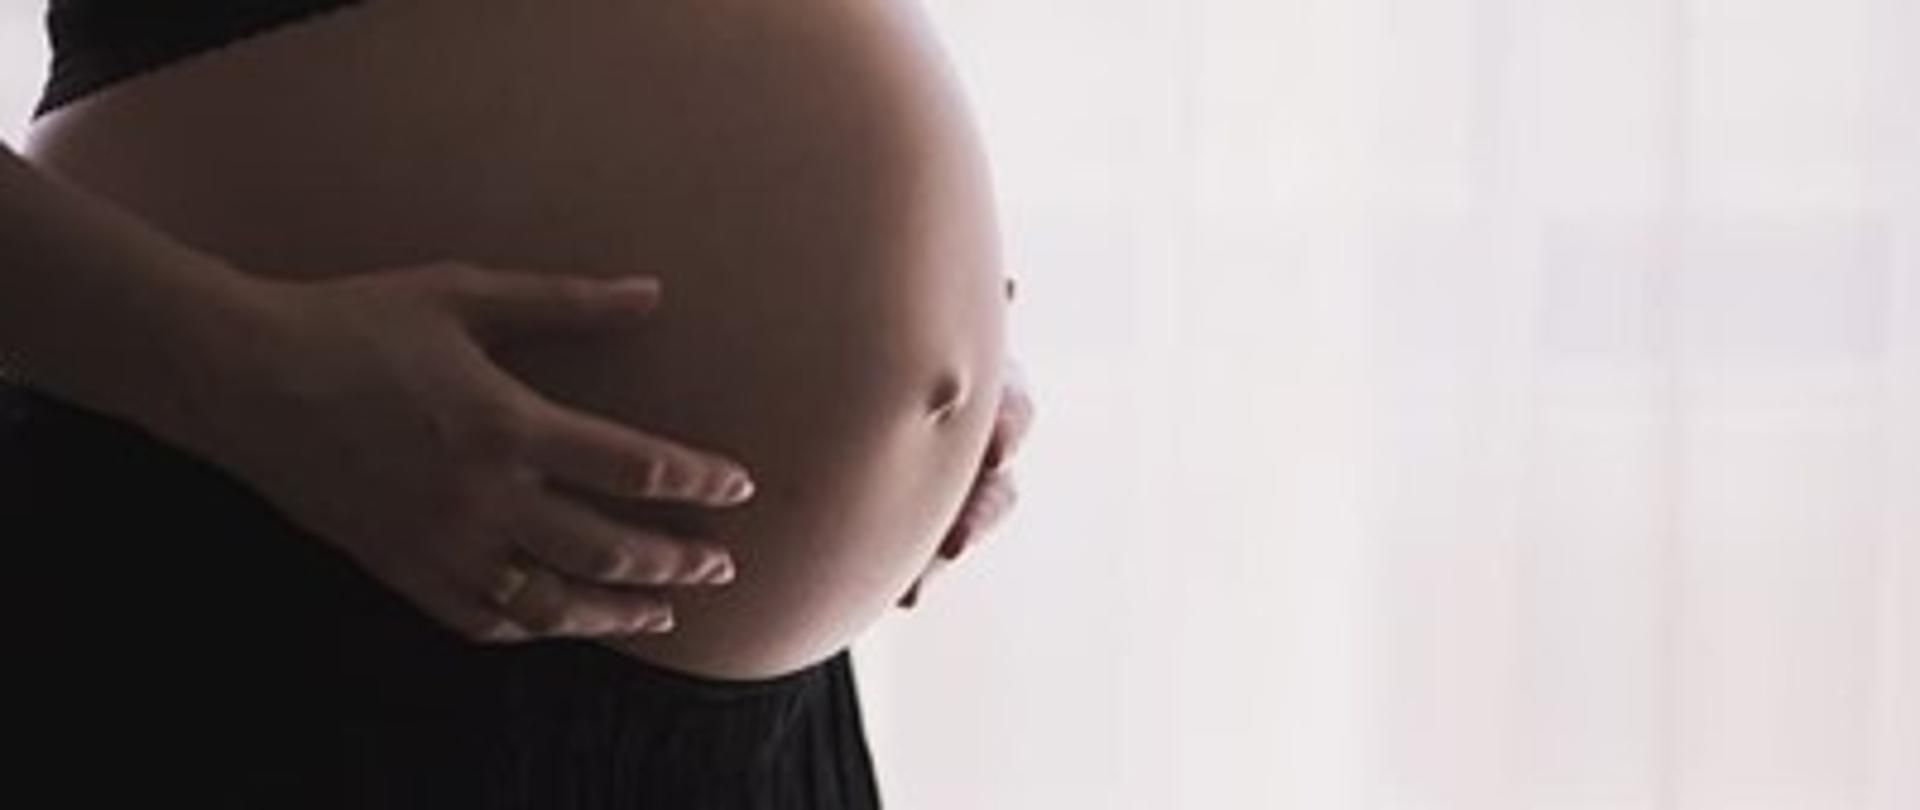 Planujesz ciążę lub jesteś w ciąży? Zapoznaj się z naszymi radami.